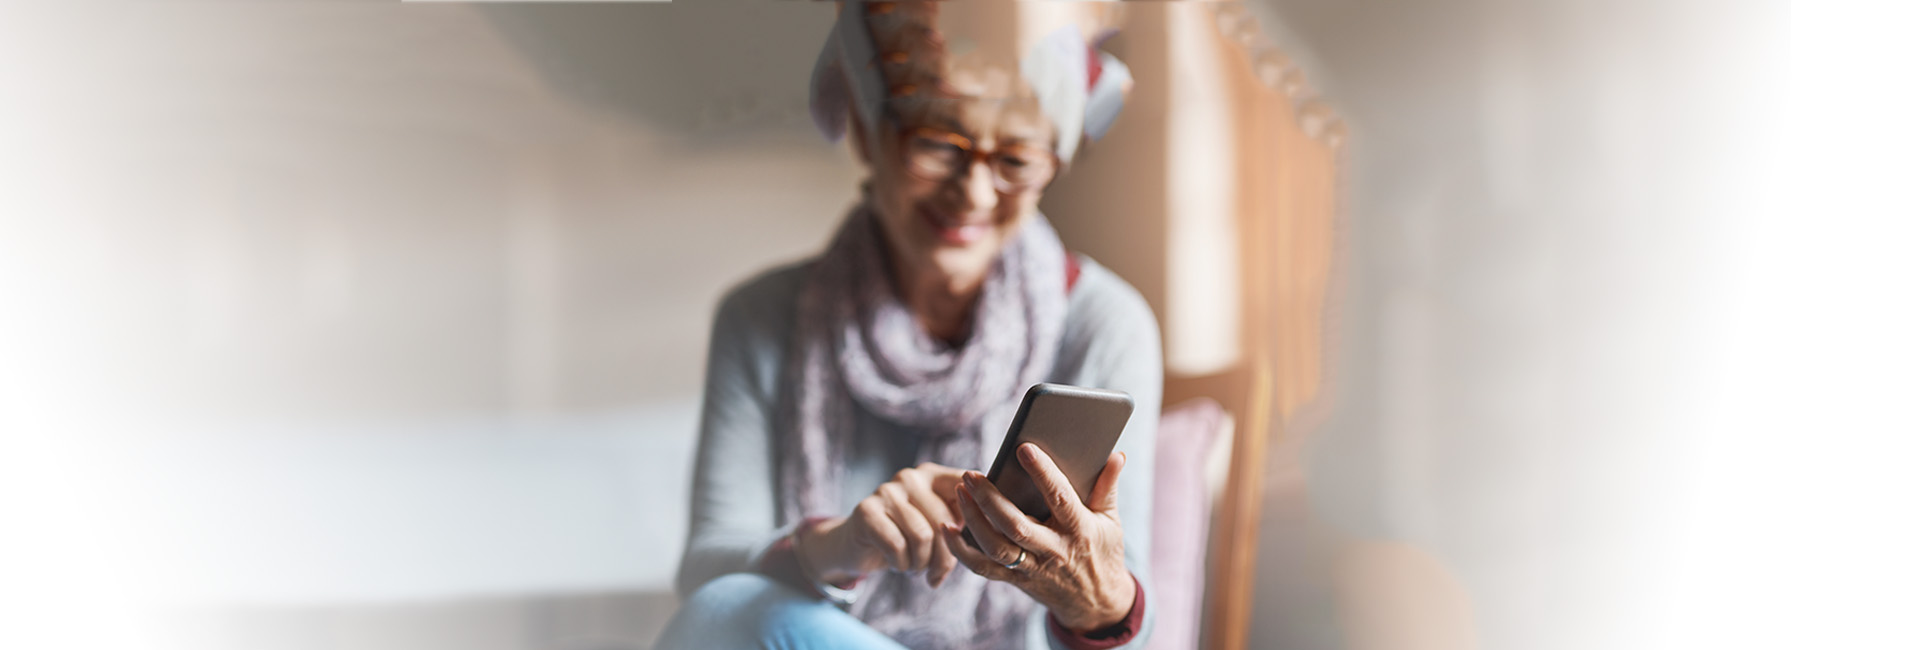 Versicherungszeiten für Pension: Seniorin nutzt Smartphone, lächelt glücklich